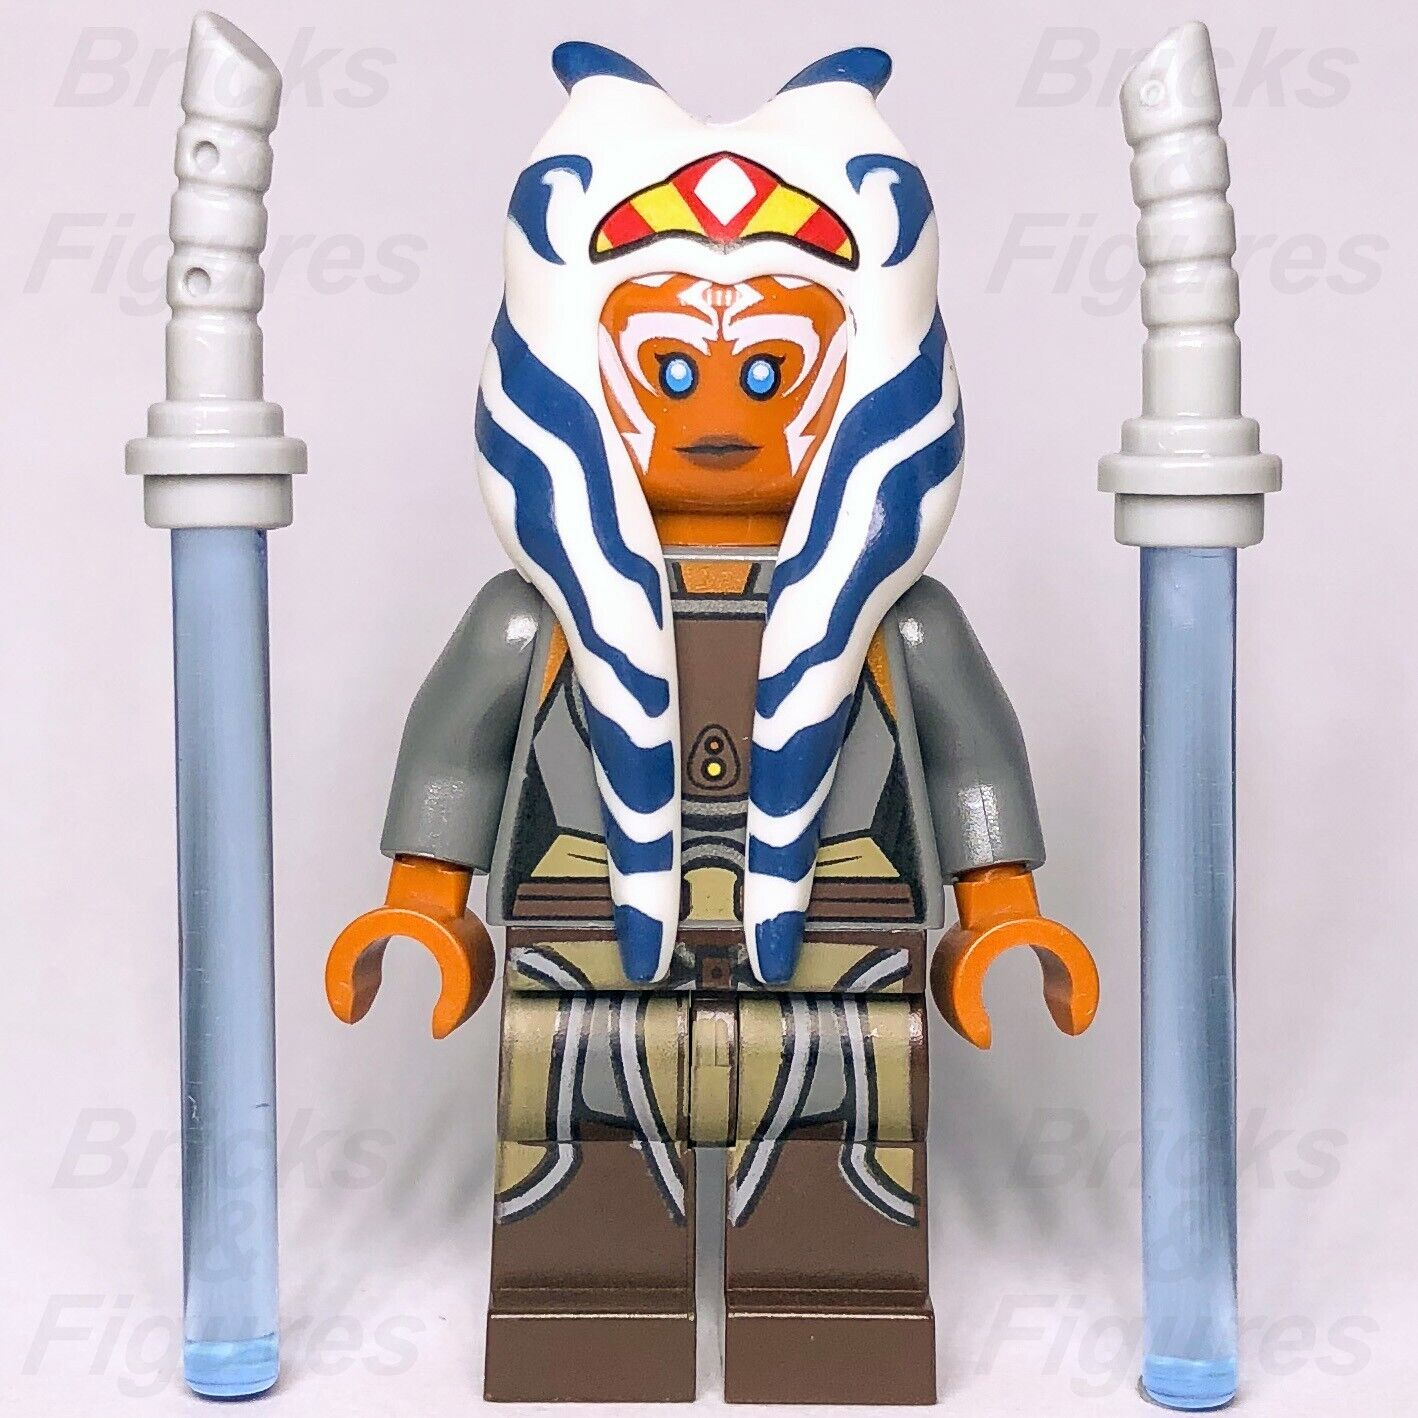 LEGO Star Wars Ahsoka Tano Minifigure Adult Jedi Master Rebels 75158 sw0759 New